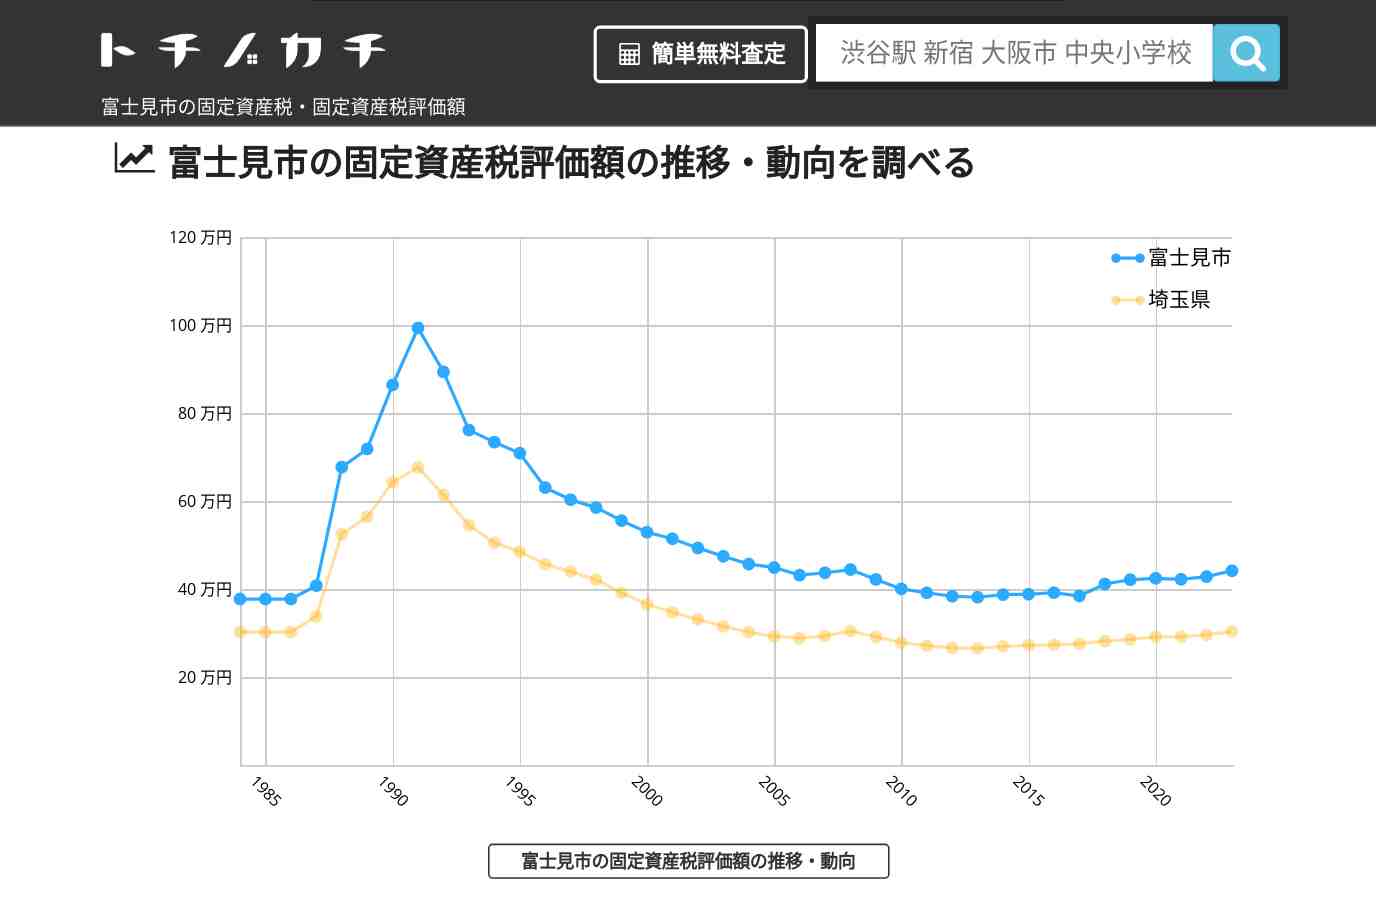 関沢小学校(埼玉県 富士見市)周辺の固定資産税・固定資産税評価額 | トチノカチ